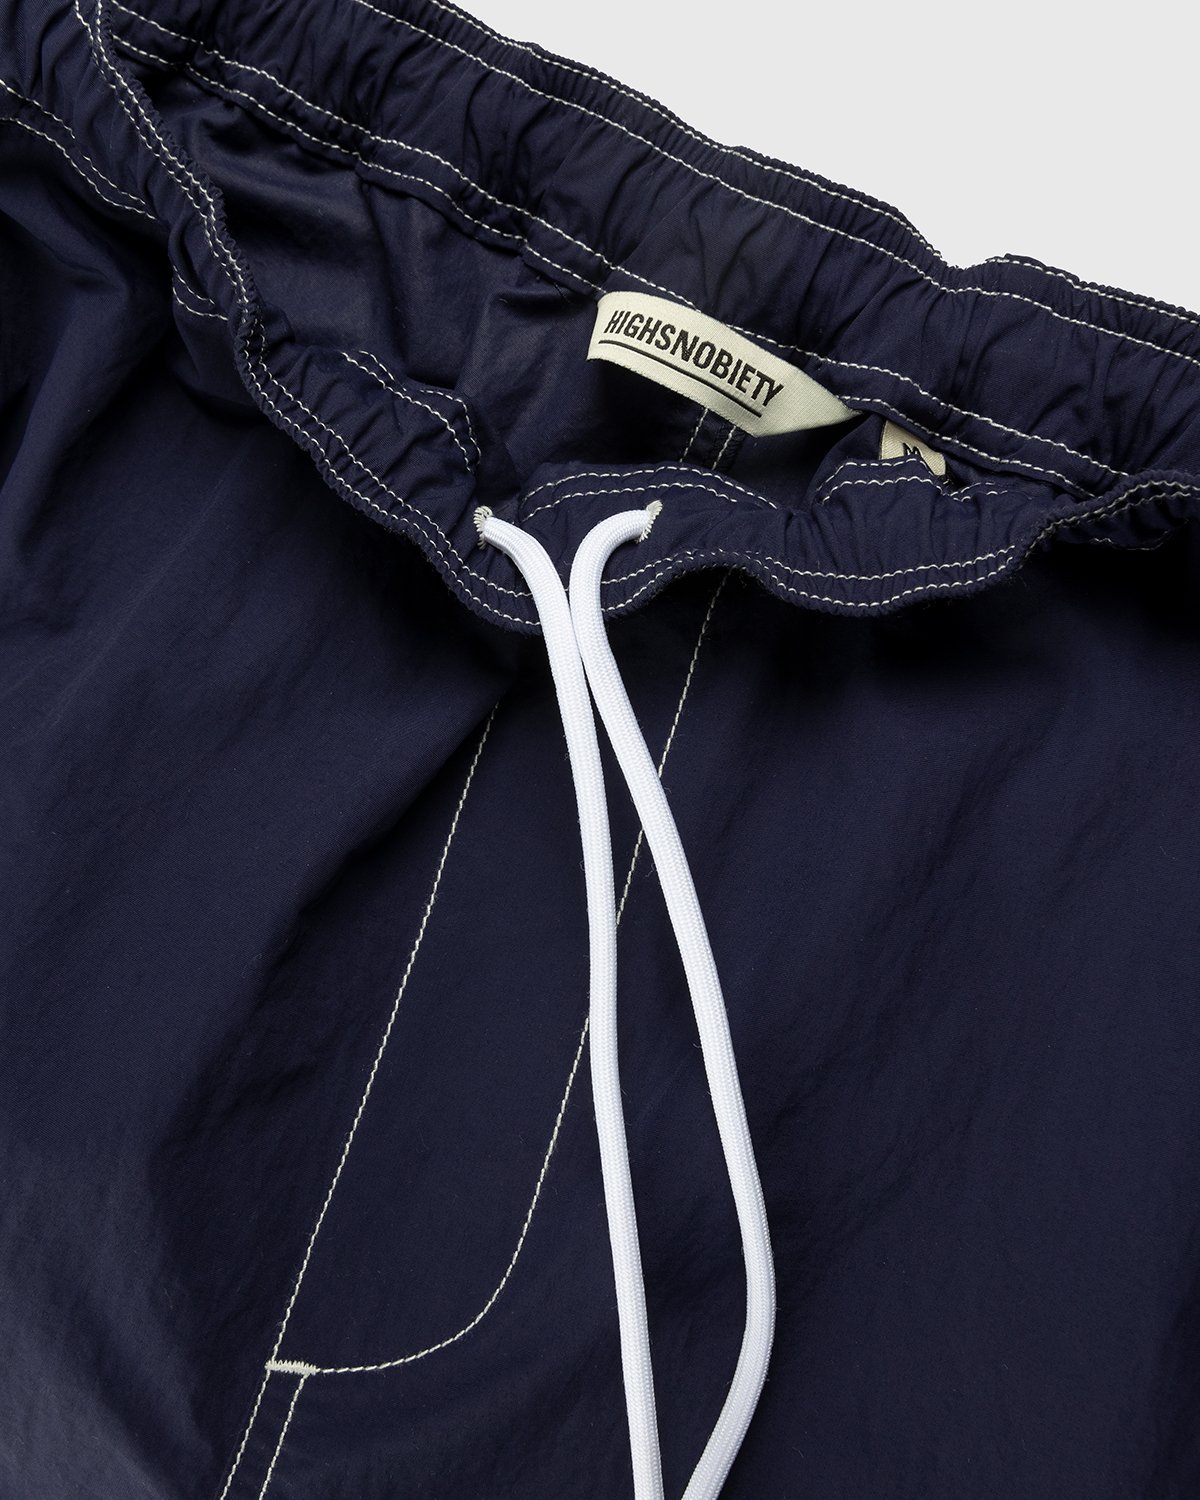 Highsnobiety - Contrast Brushed Nylon Elastic Pants Navy - Clothing - Blue - Image 5